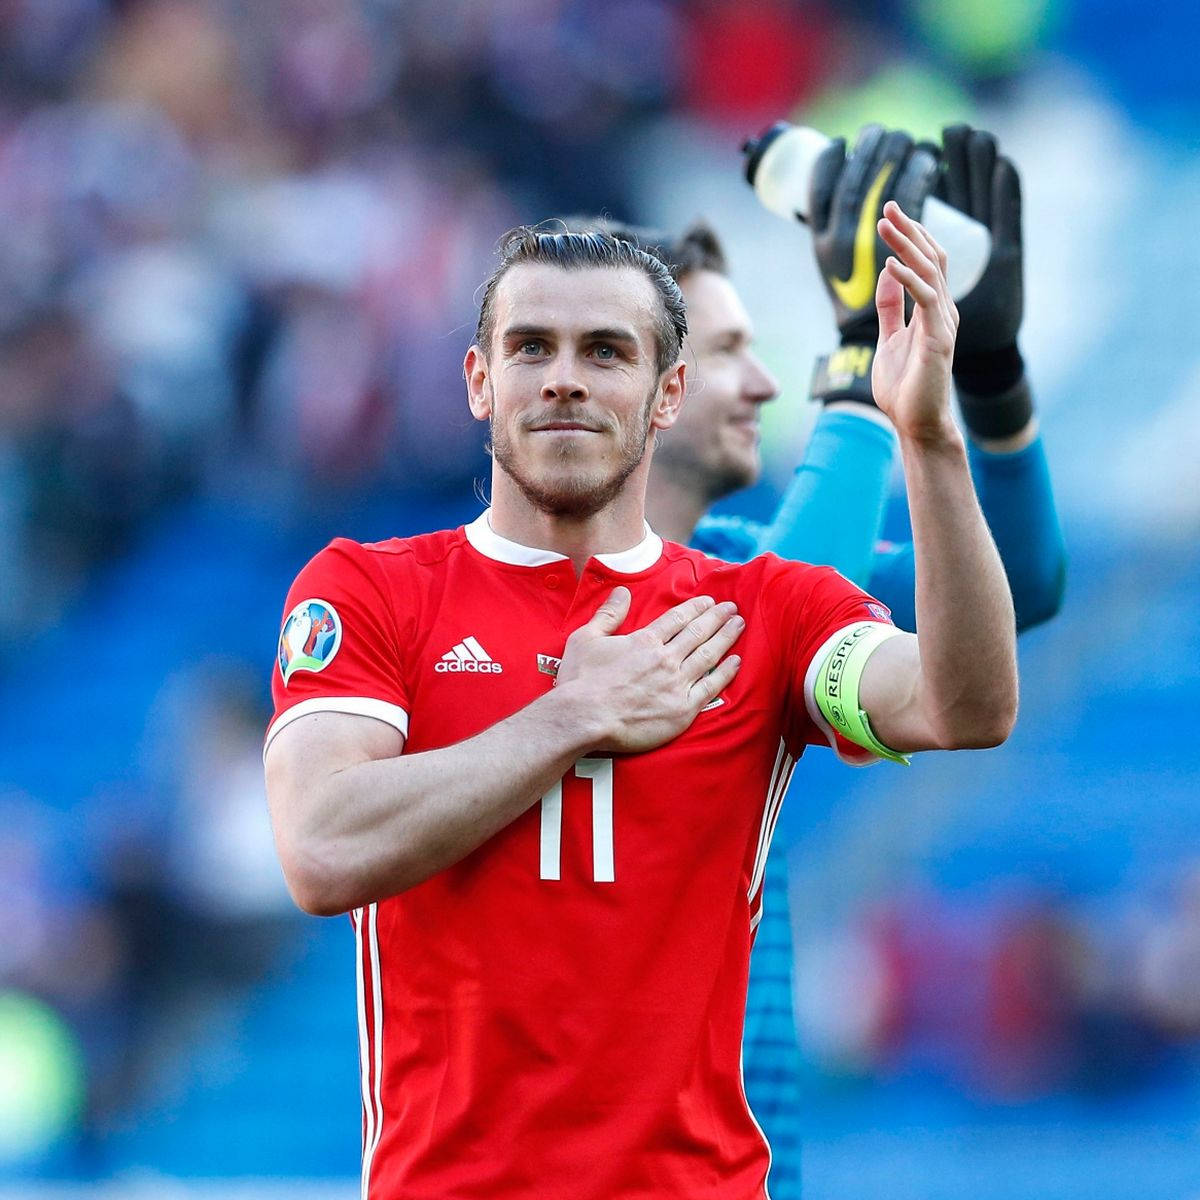 Equipe Nacional De Futebol Do País De Gales, Mão No Coração, Papel De Parede De Gareth Bale. Papel de Parede